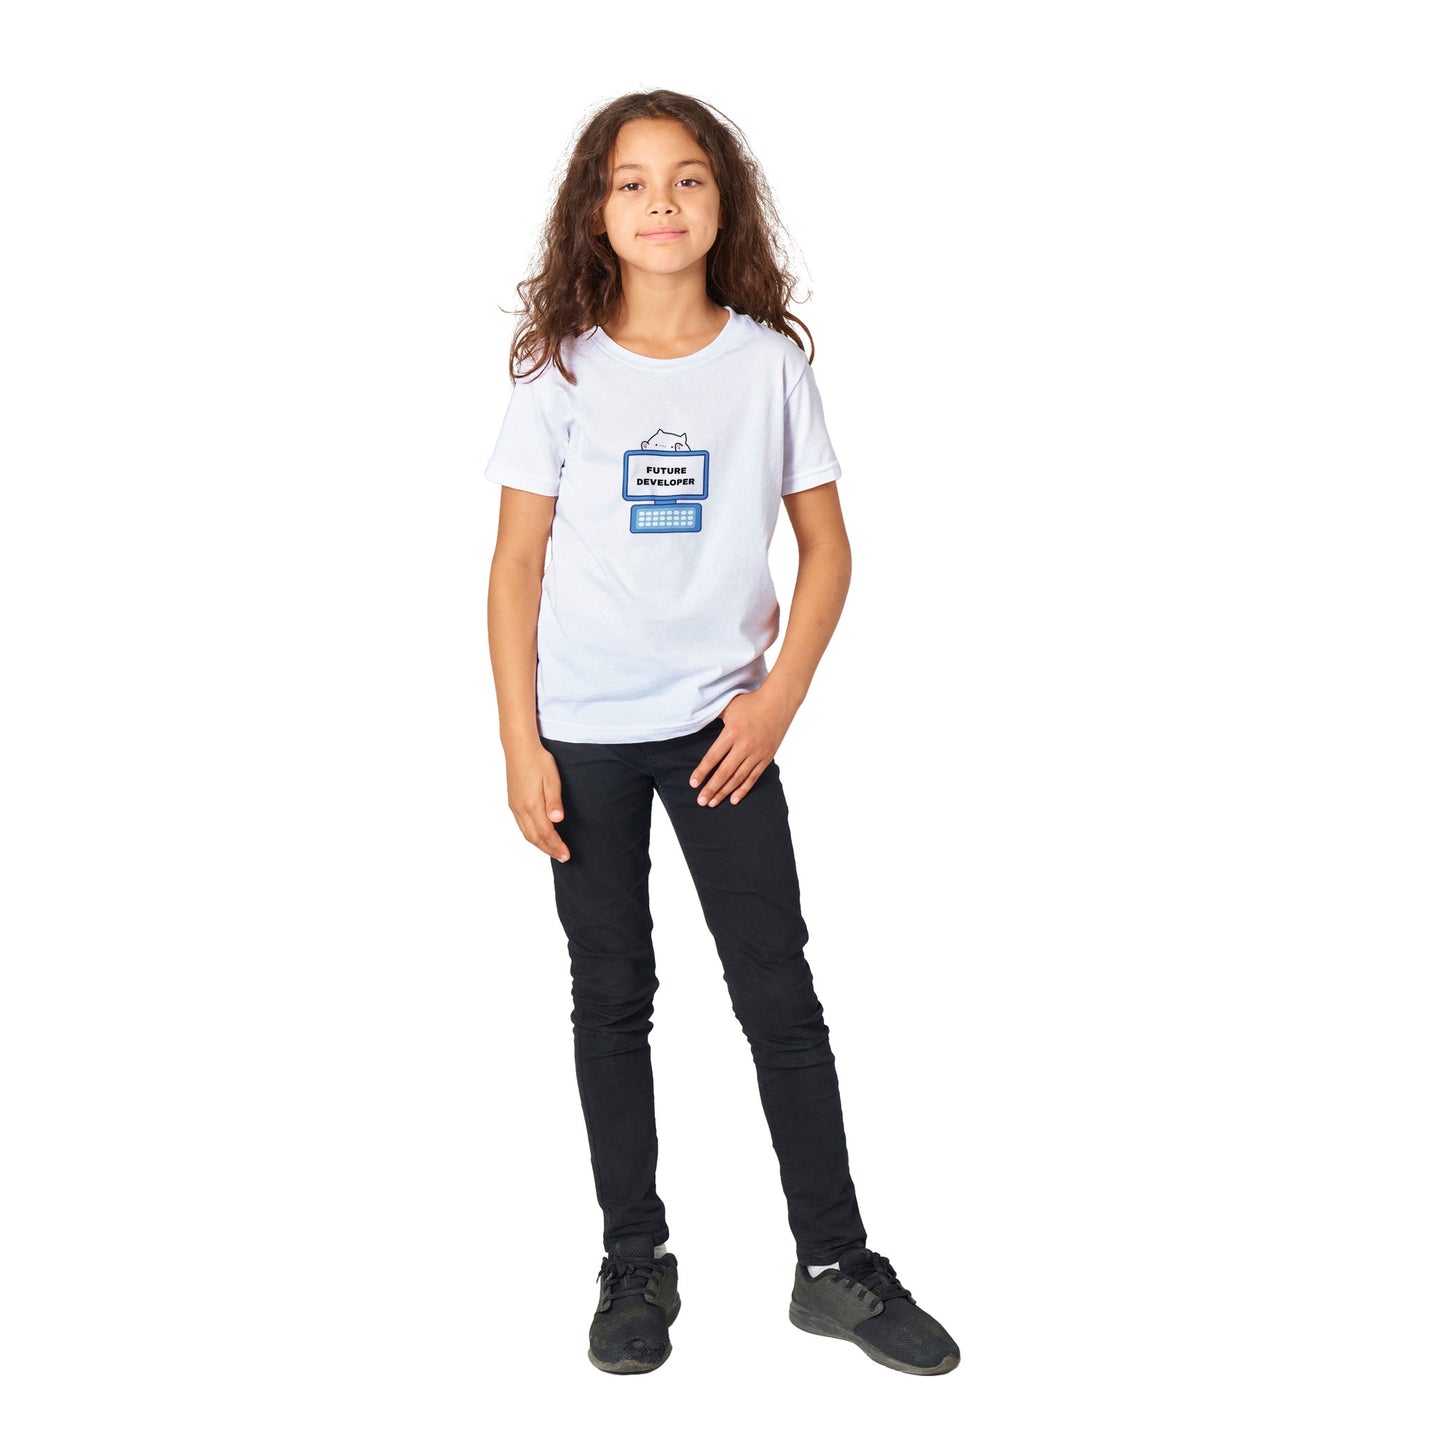 Kids Future Developer Premium T-shirt